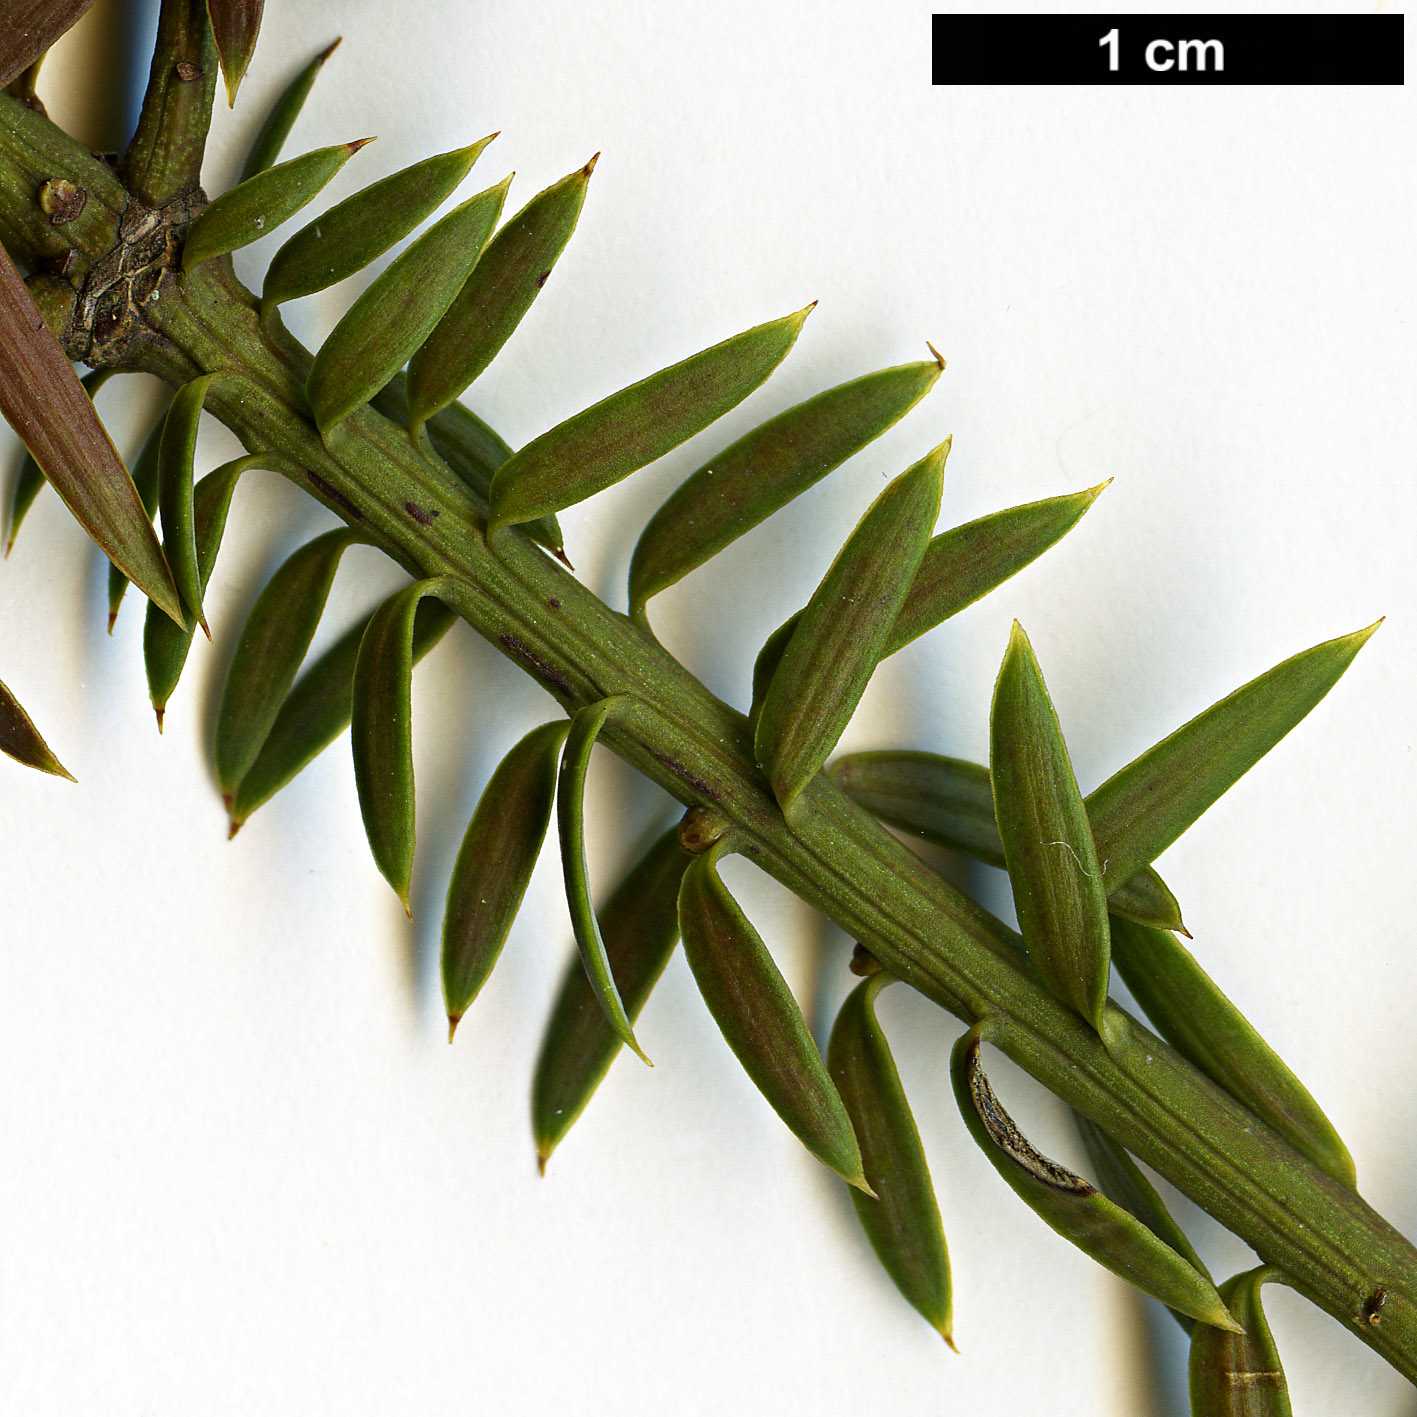 High resolution image: Family: Podocarpaceae - Genus: Podocarpus - Taxon: acutifolius